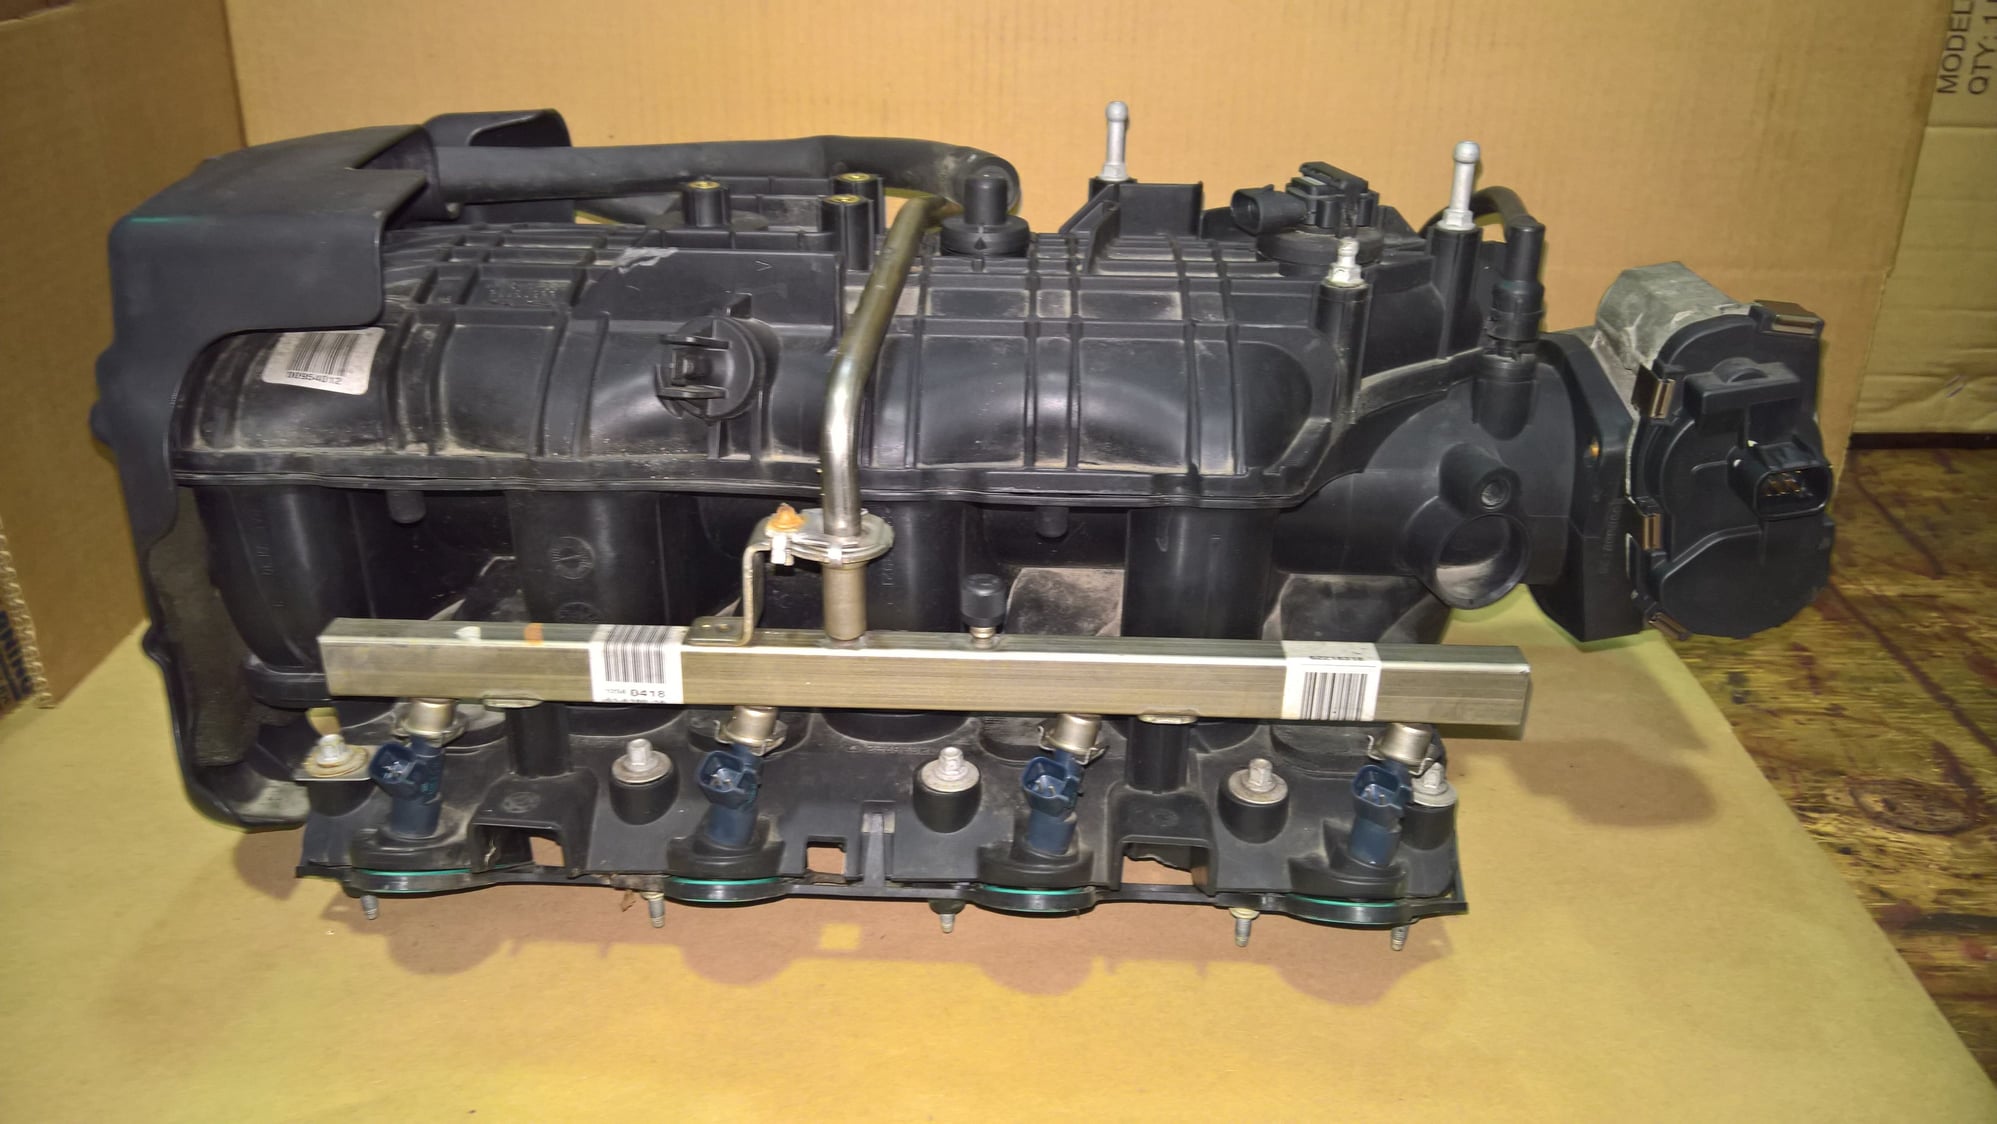 Engine - Internals - Ls2 parts - Used - Westland, MI 48185, United States